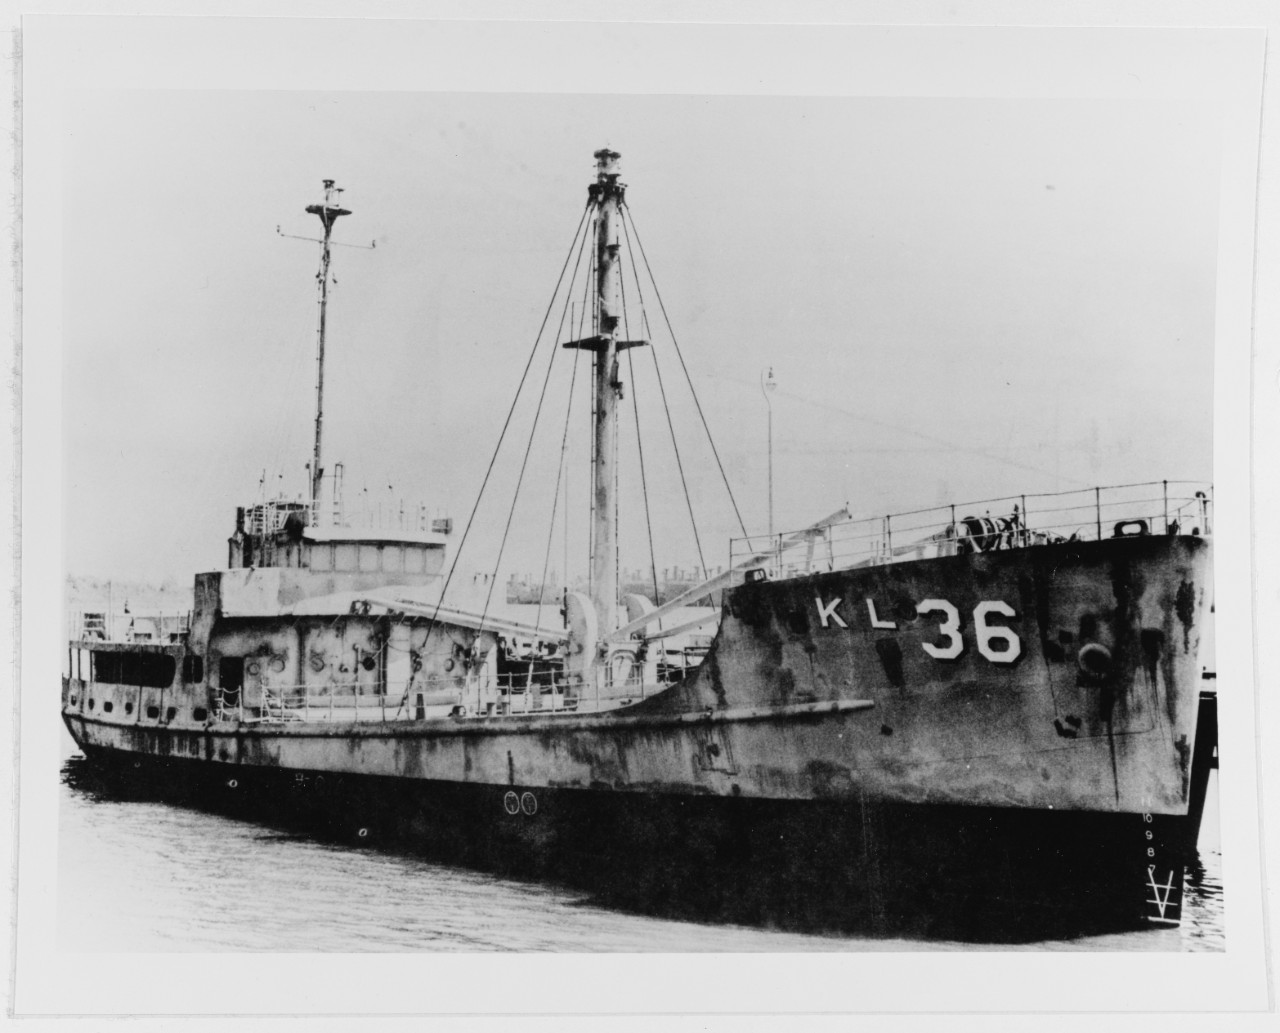 USS AKL-36